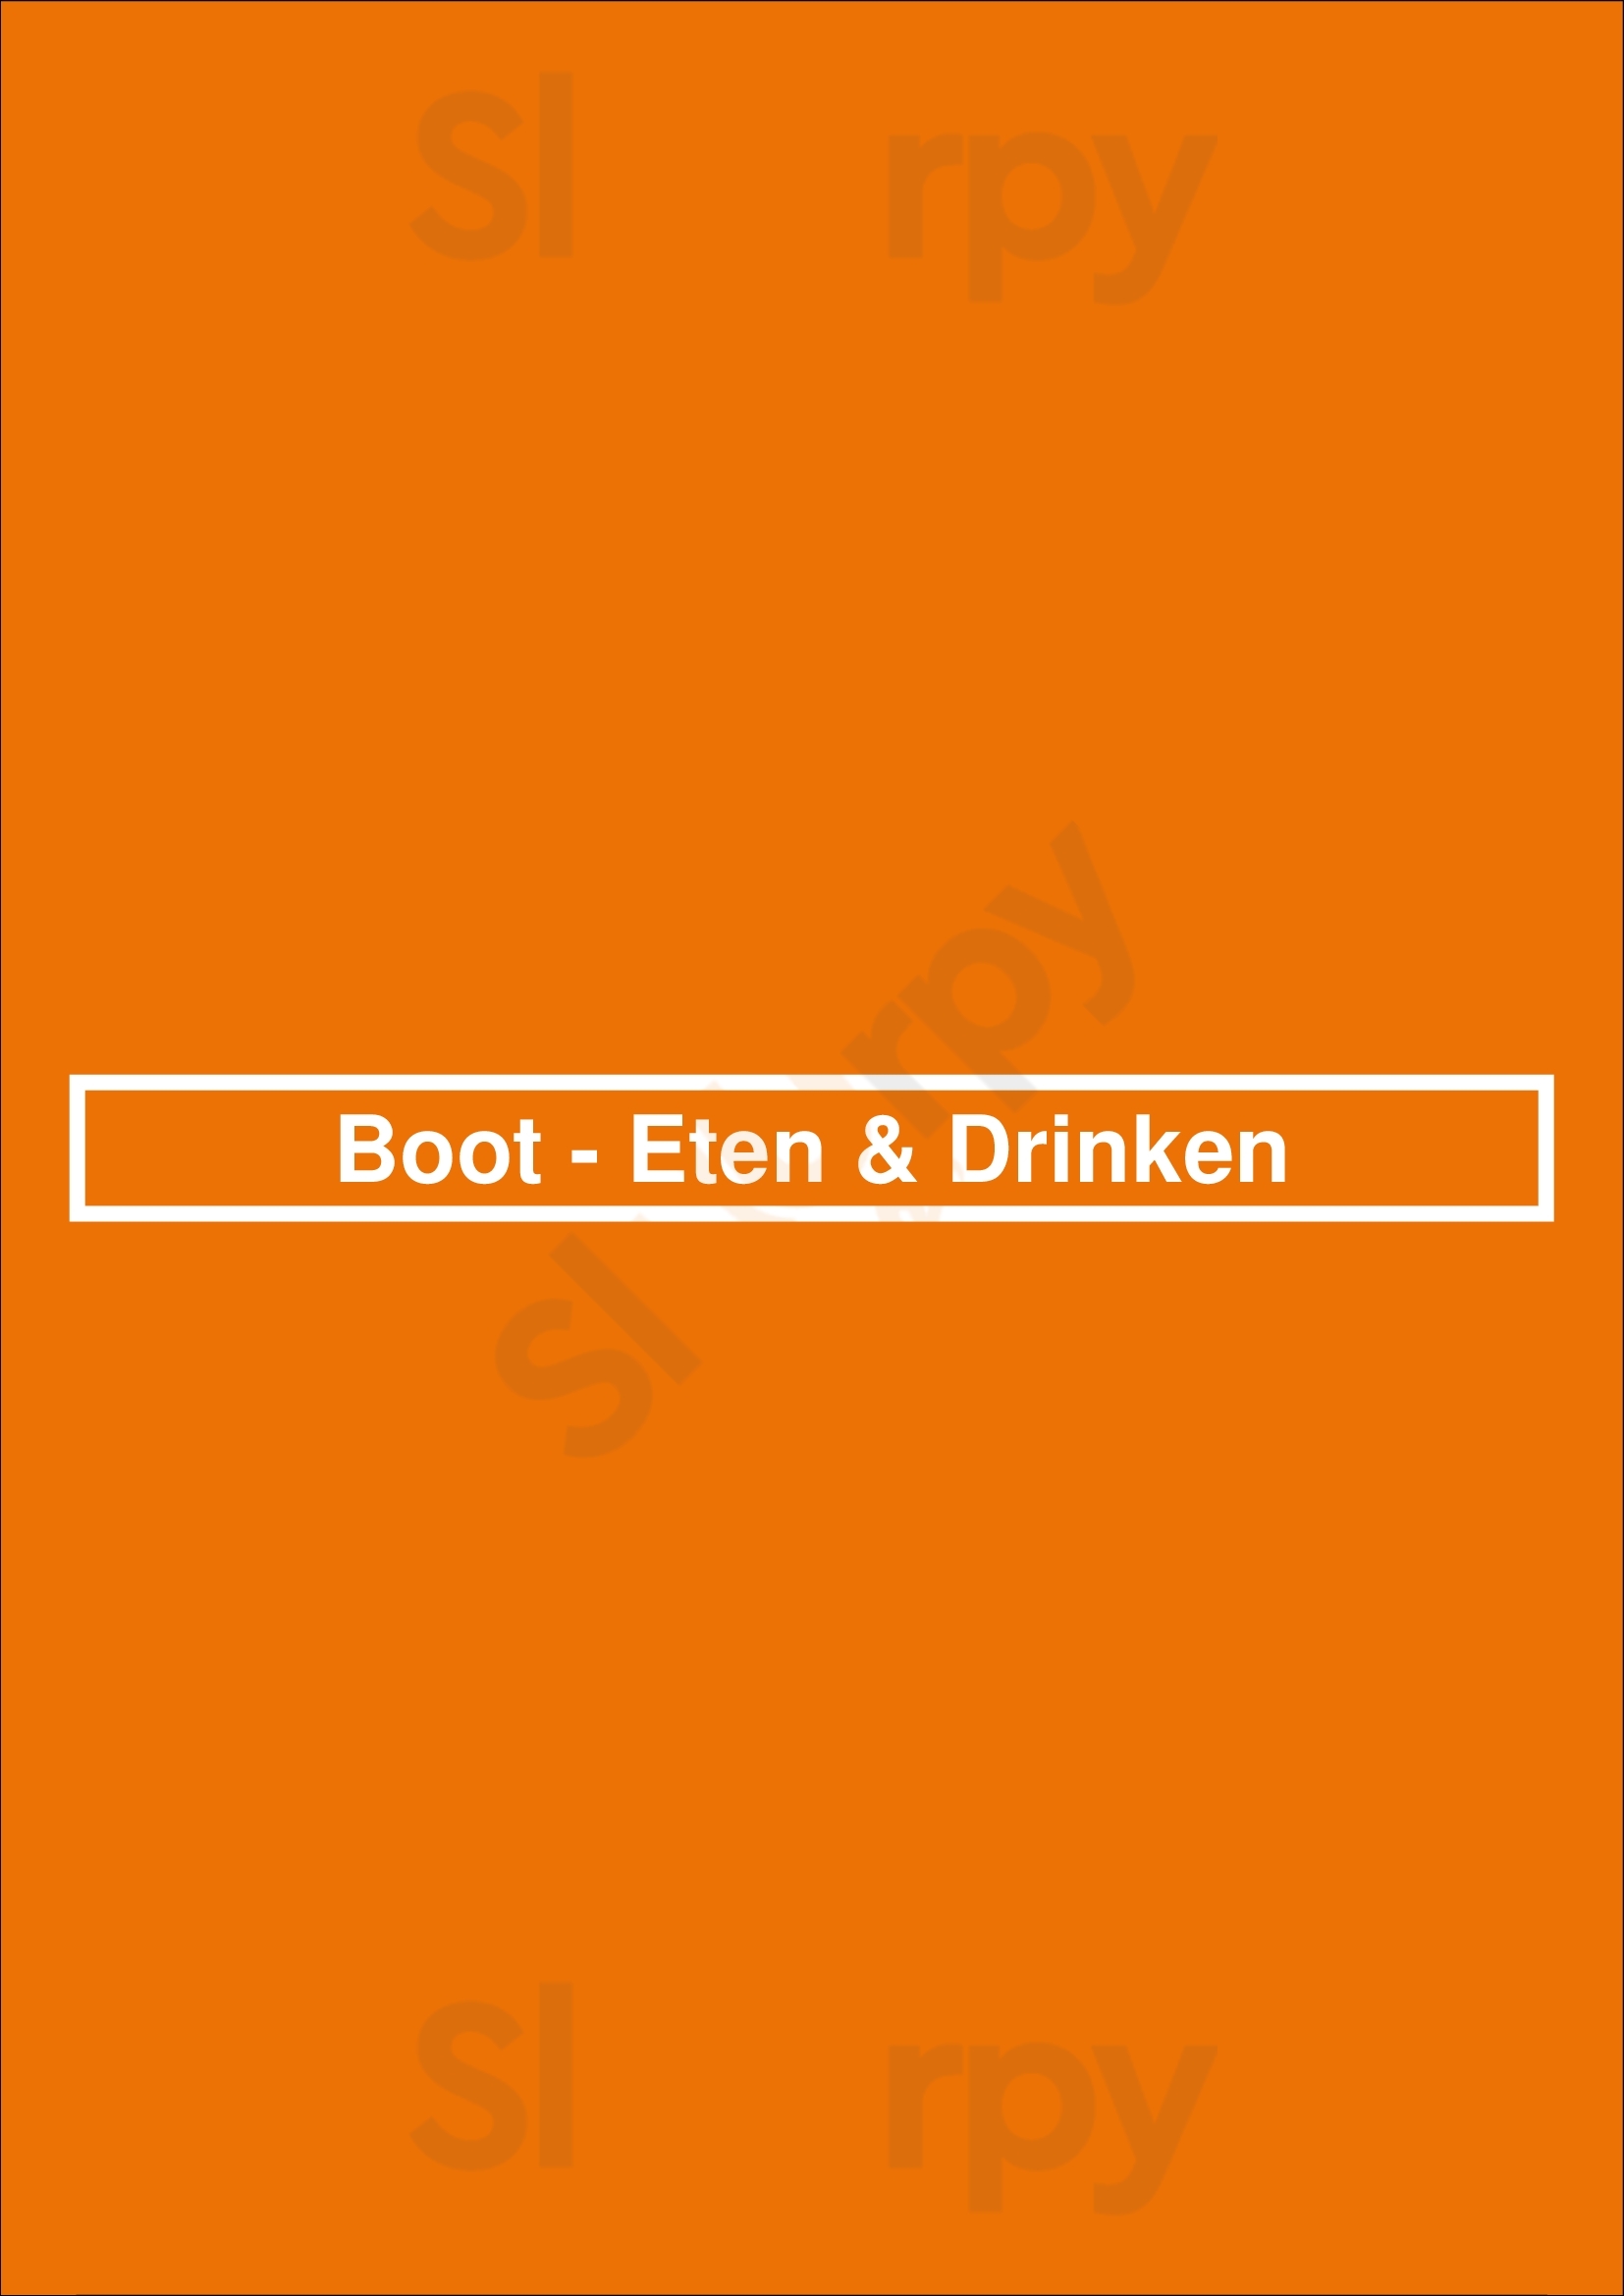 Boot - Eten & Drinken Huizen Menu - 1